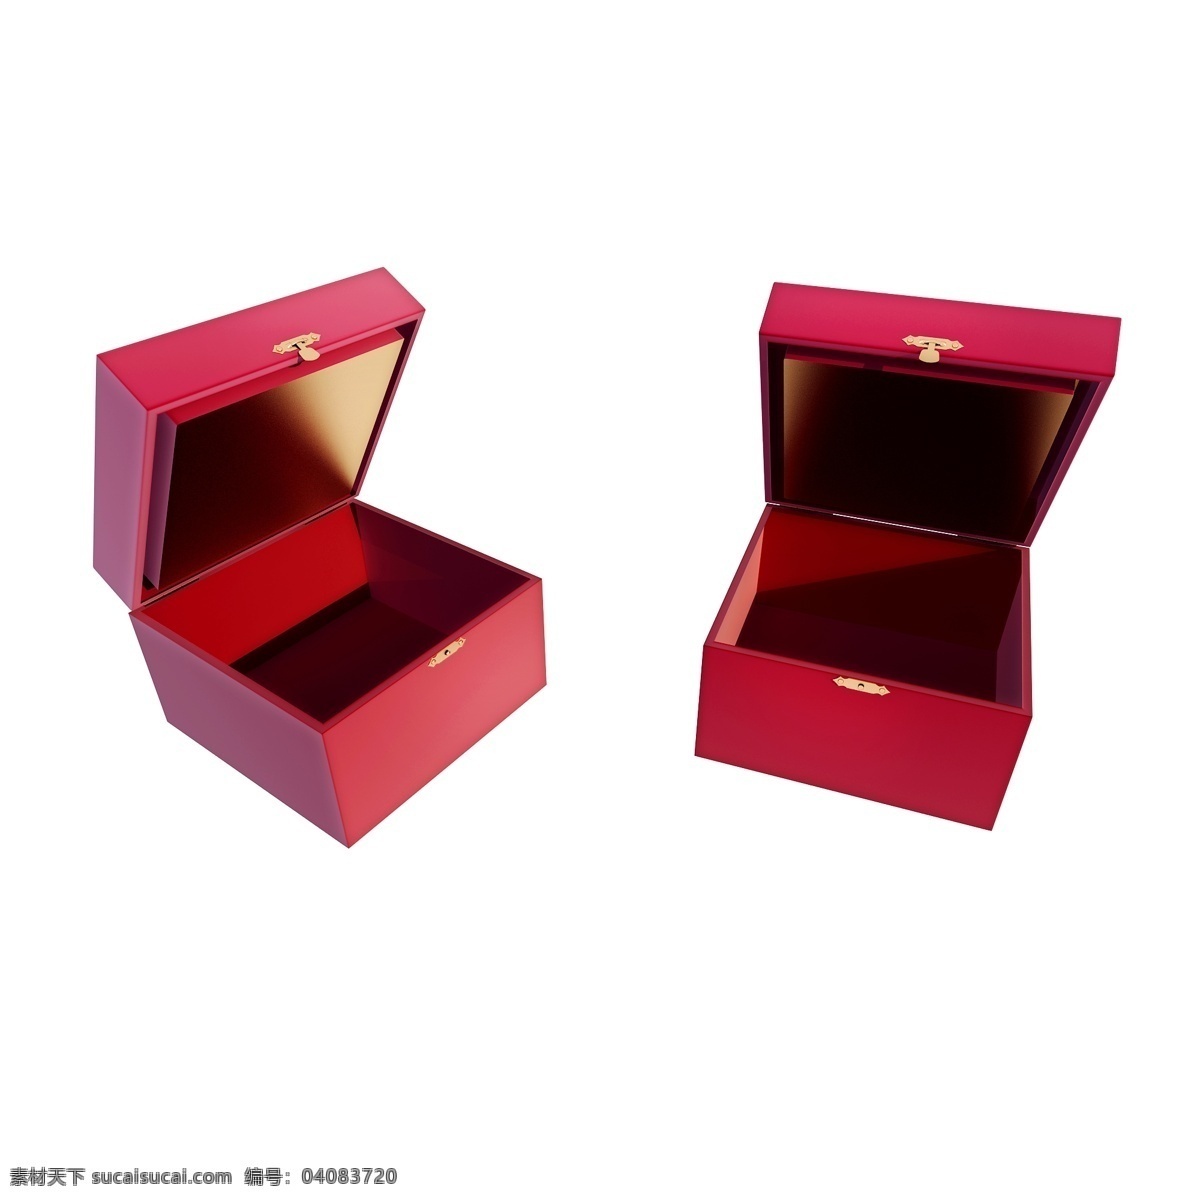 立体 收纳 盒 图 红色 质感 精致 盒子 礼盒 母亲节 礼物 仿真 3d 创意 套图 png图 收纳盒